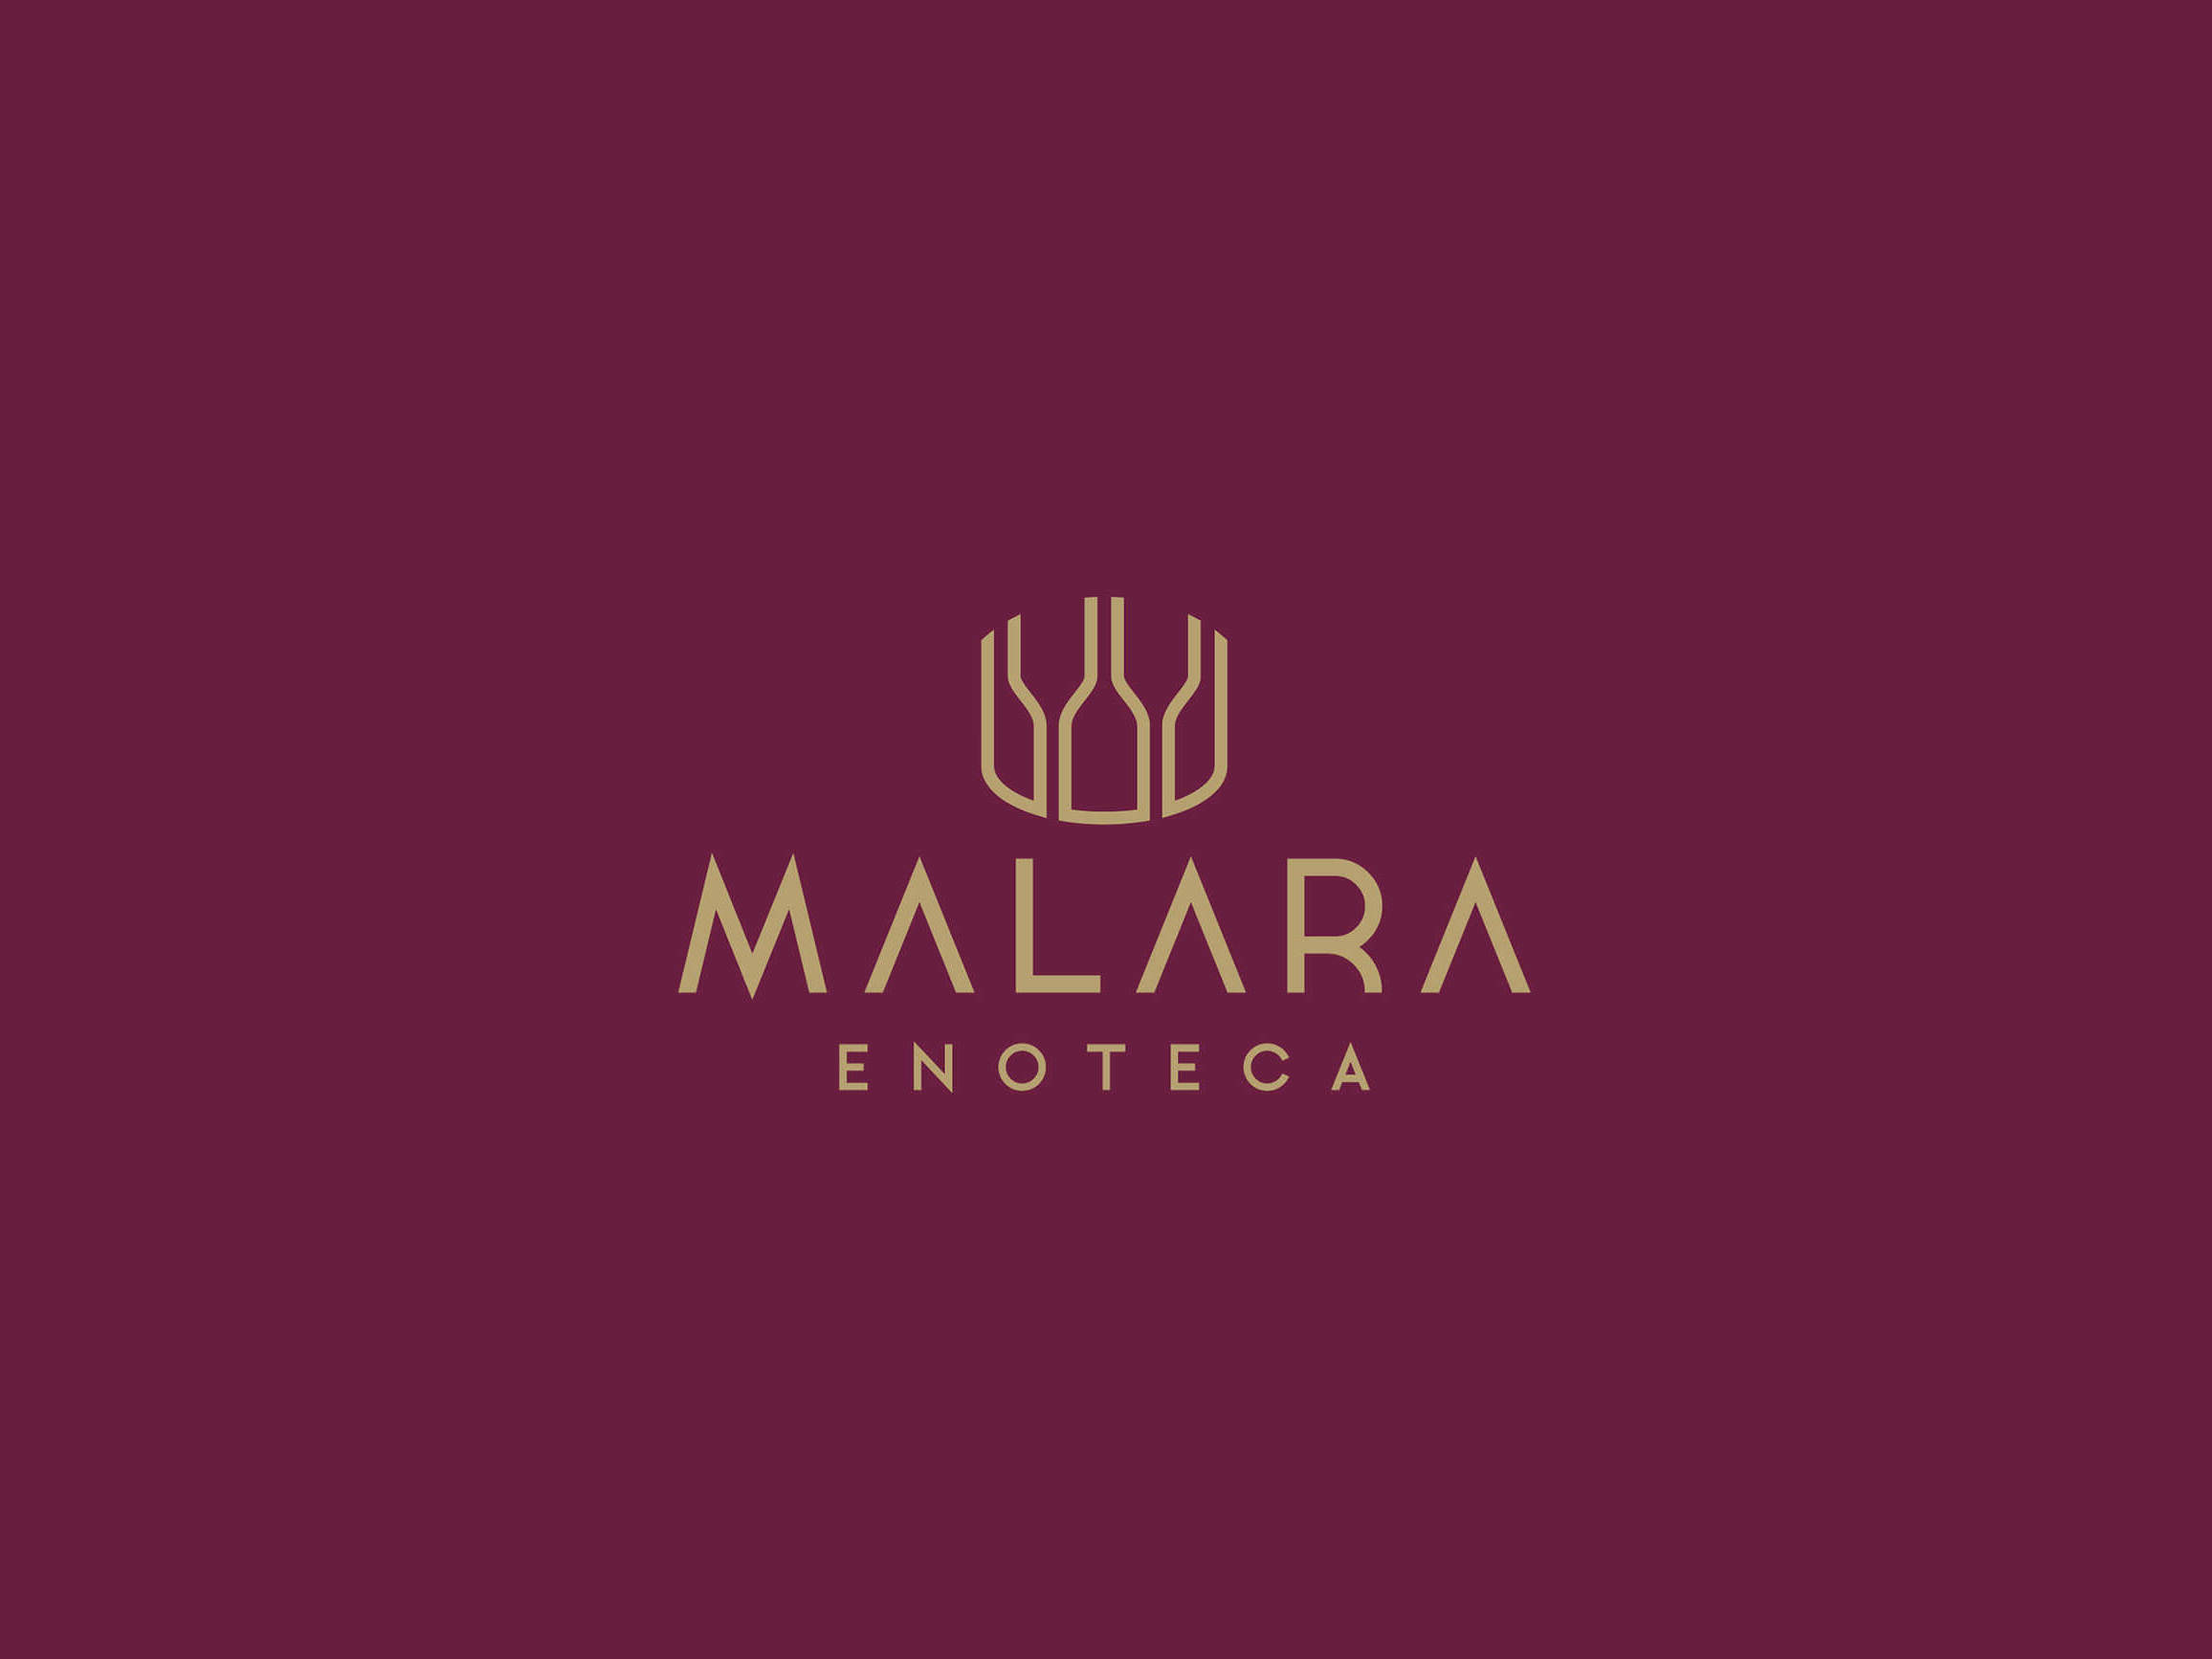 Malara - Enoteca by Francioso Comunicazione - 10